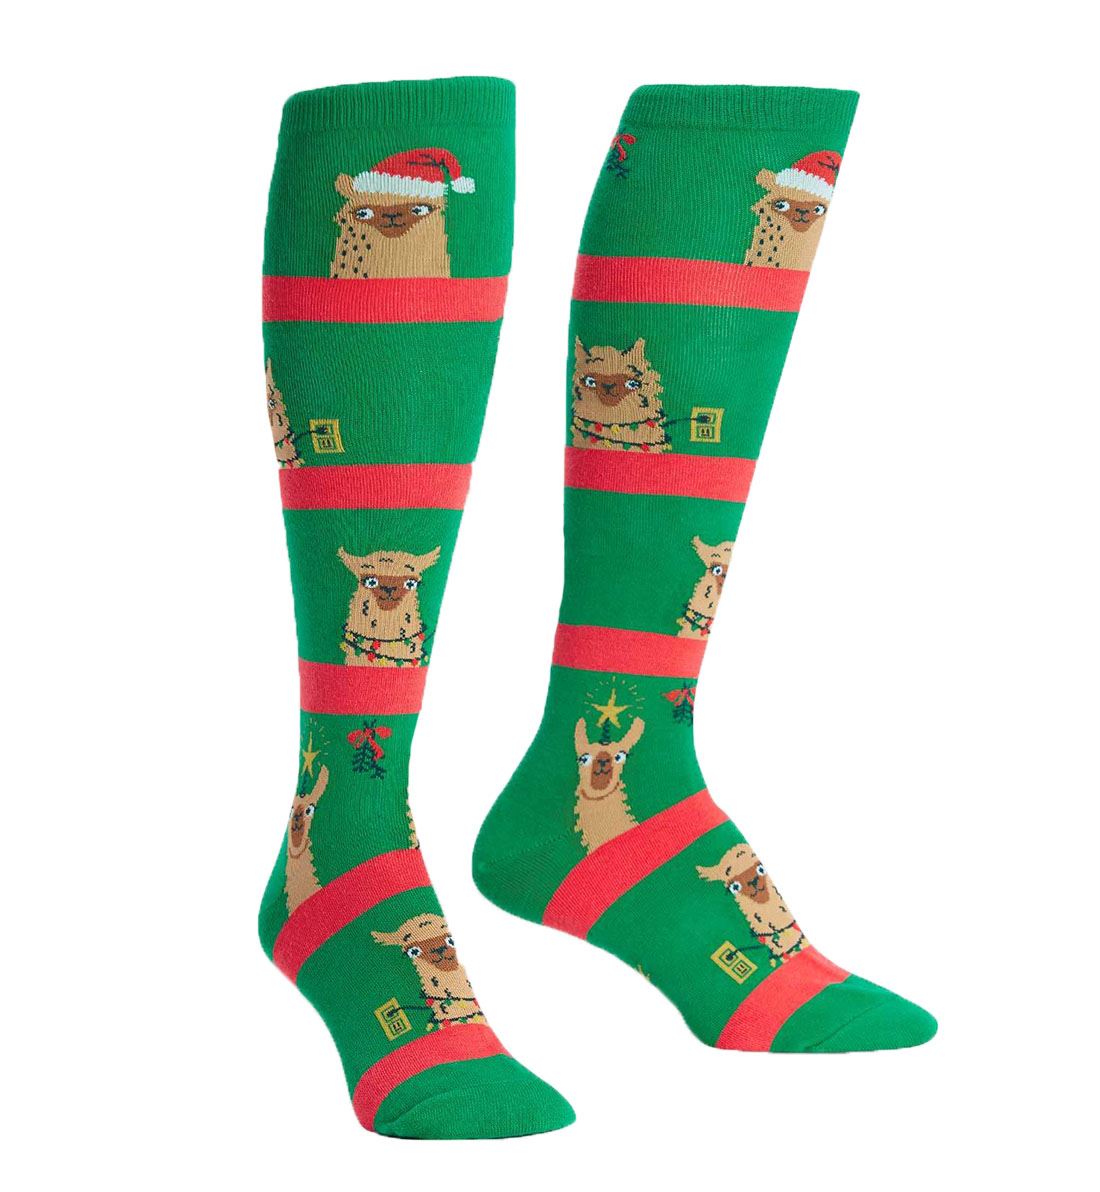 SOCK it to me Unisex Knee High Socks (f0449),Fa La La Llamas - Fa La La Llamas,One Size